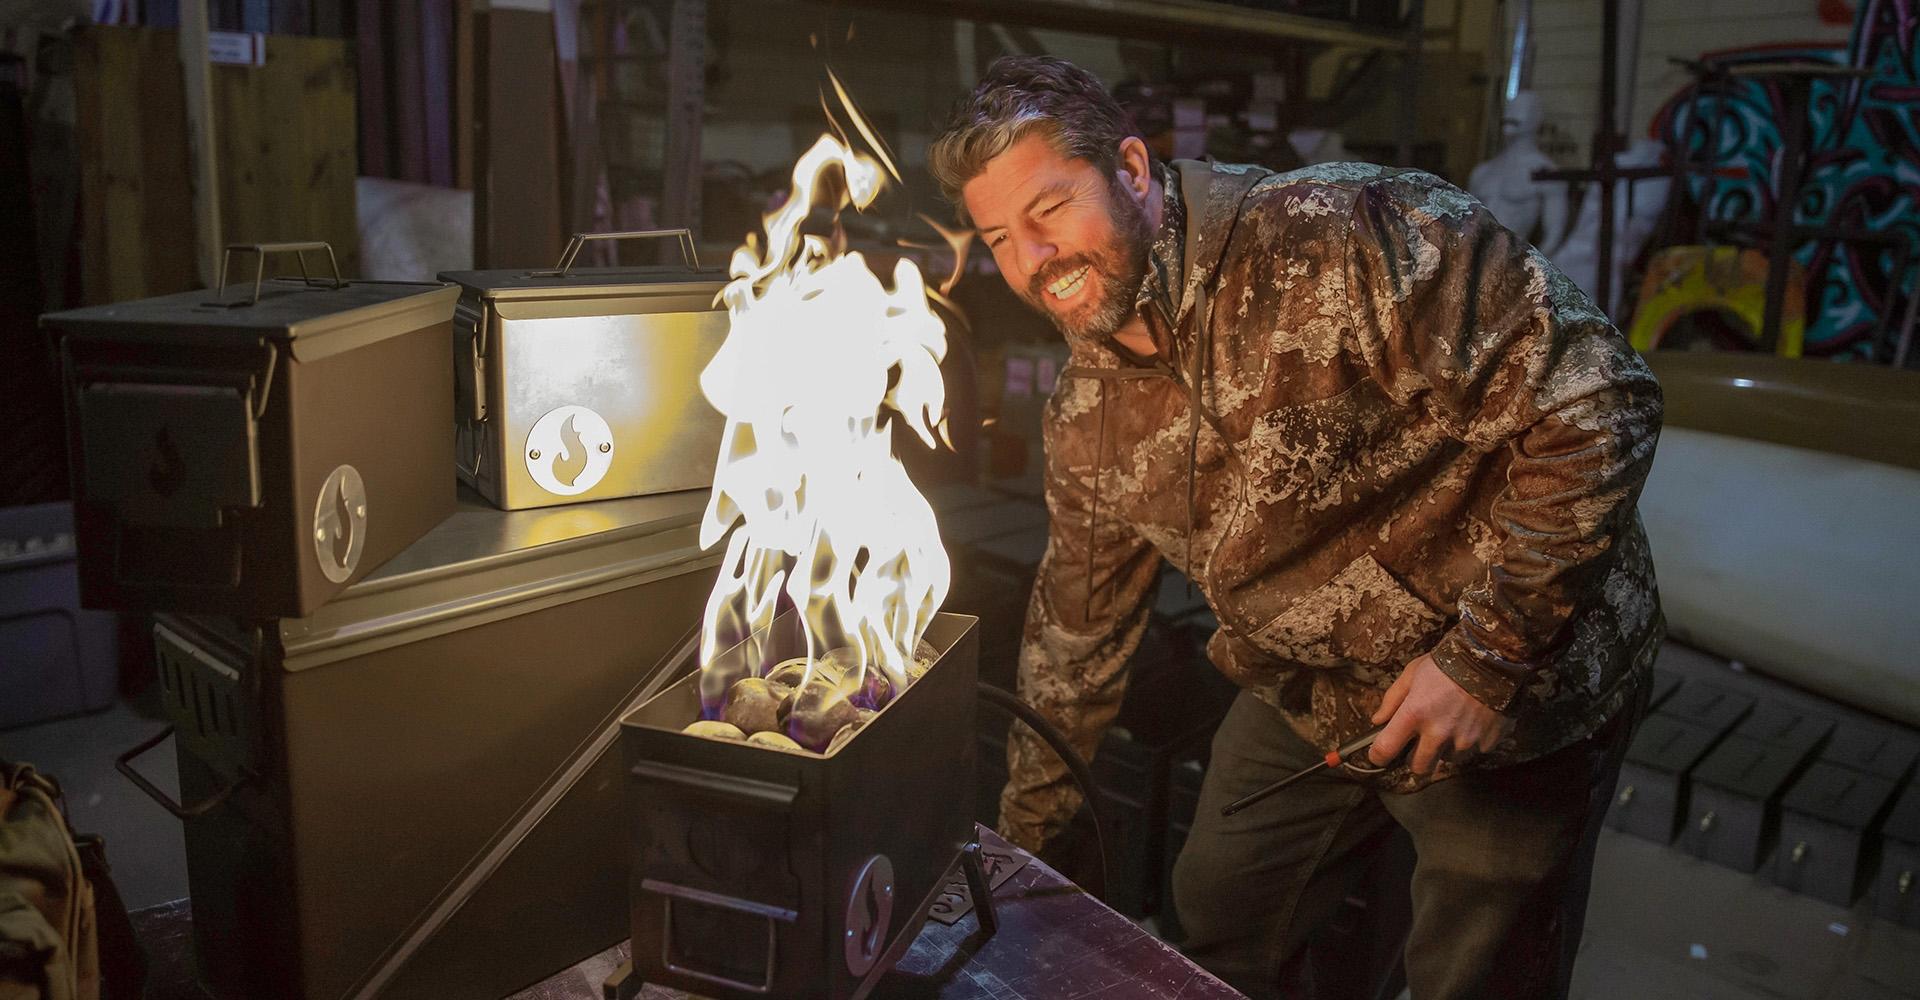 MSU Denver alumnus Josh Thurmond demonstrates the Lava Box, a portable campfire